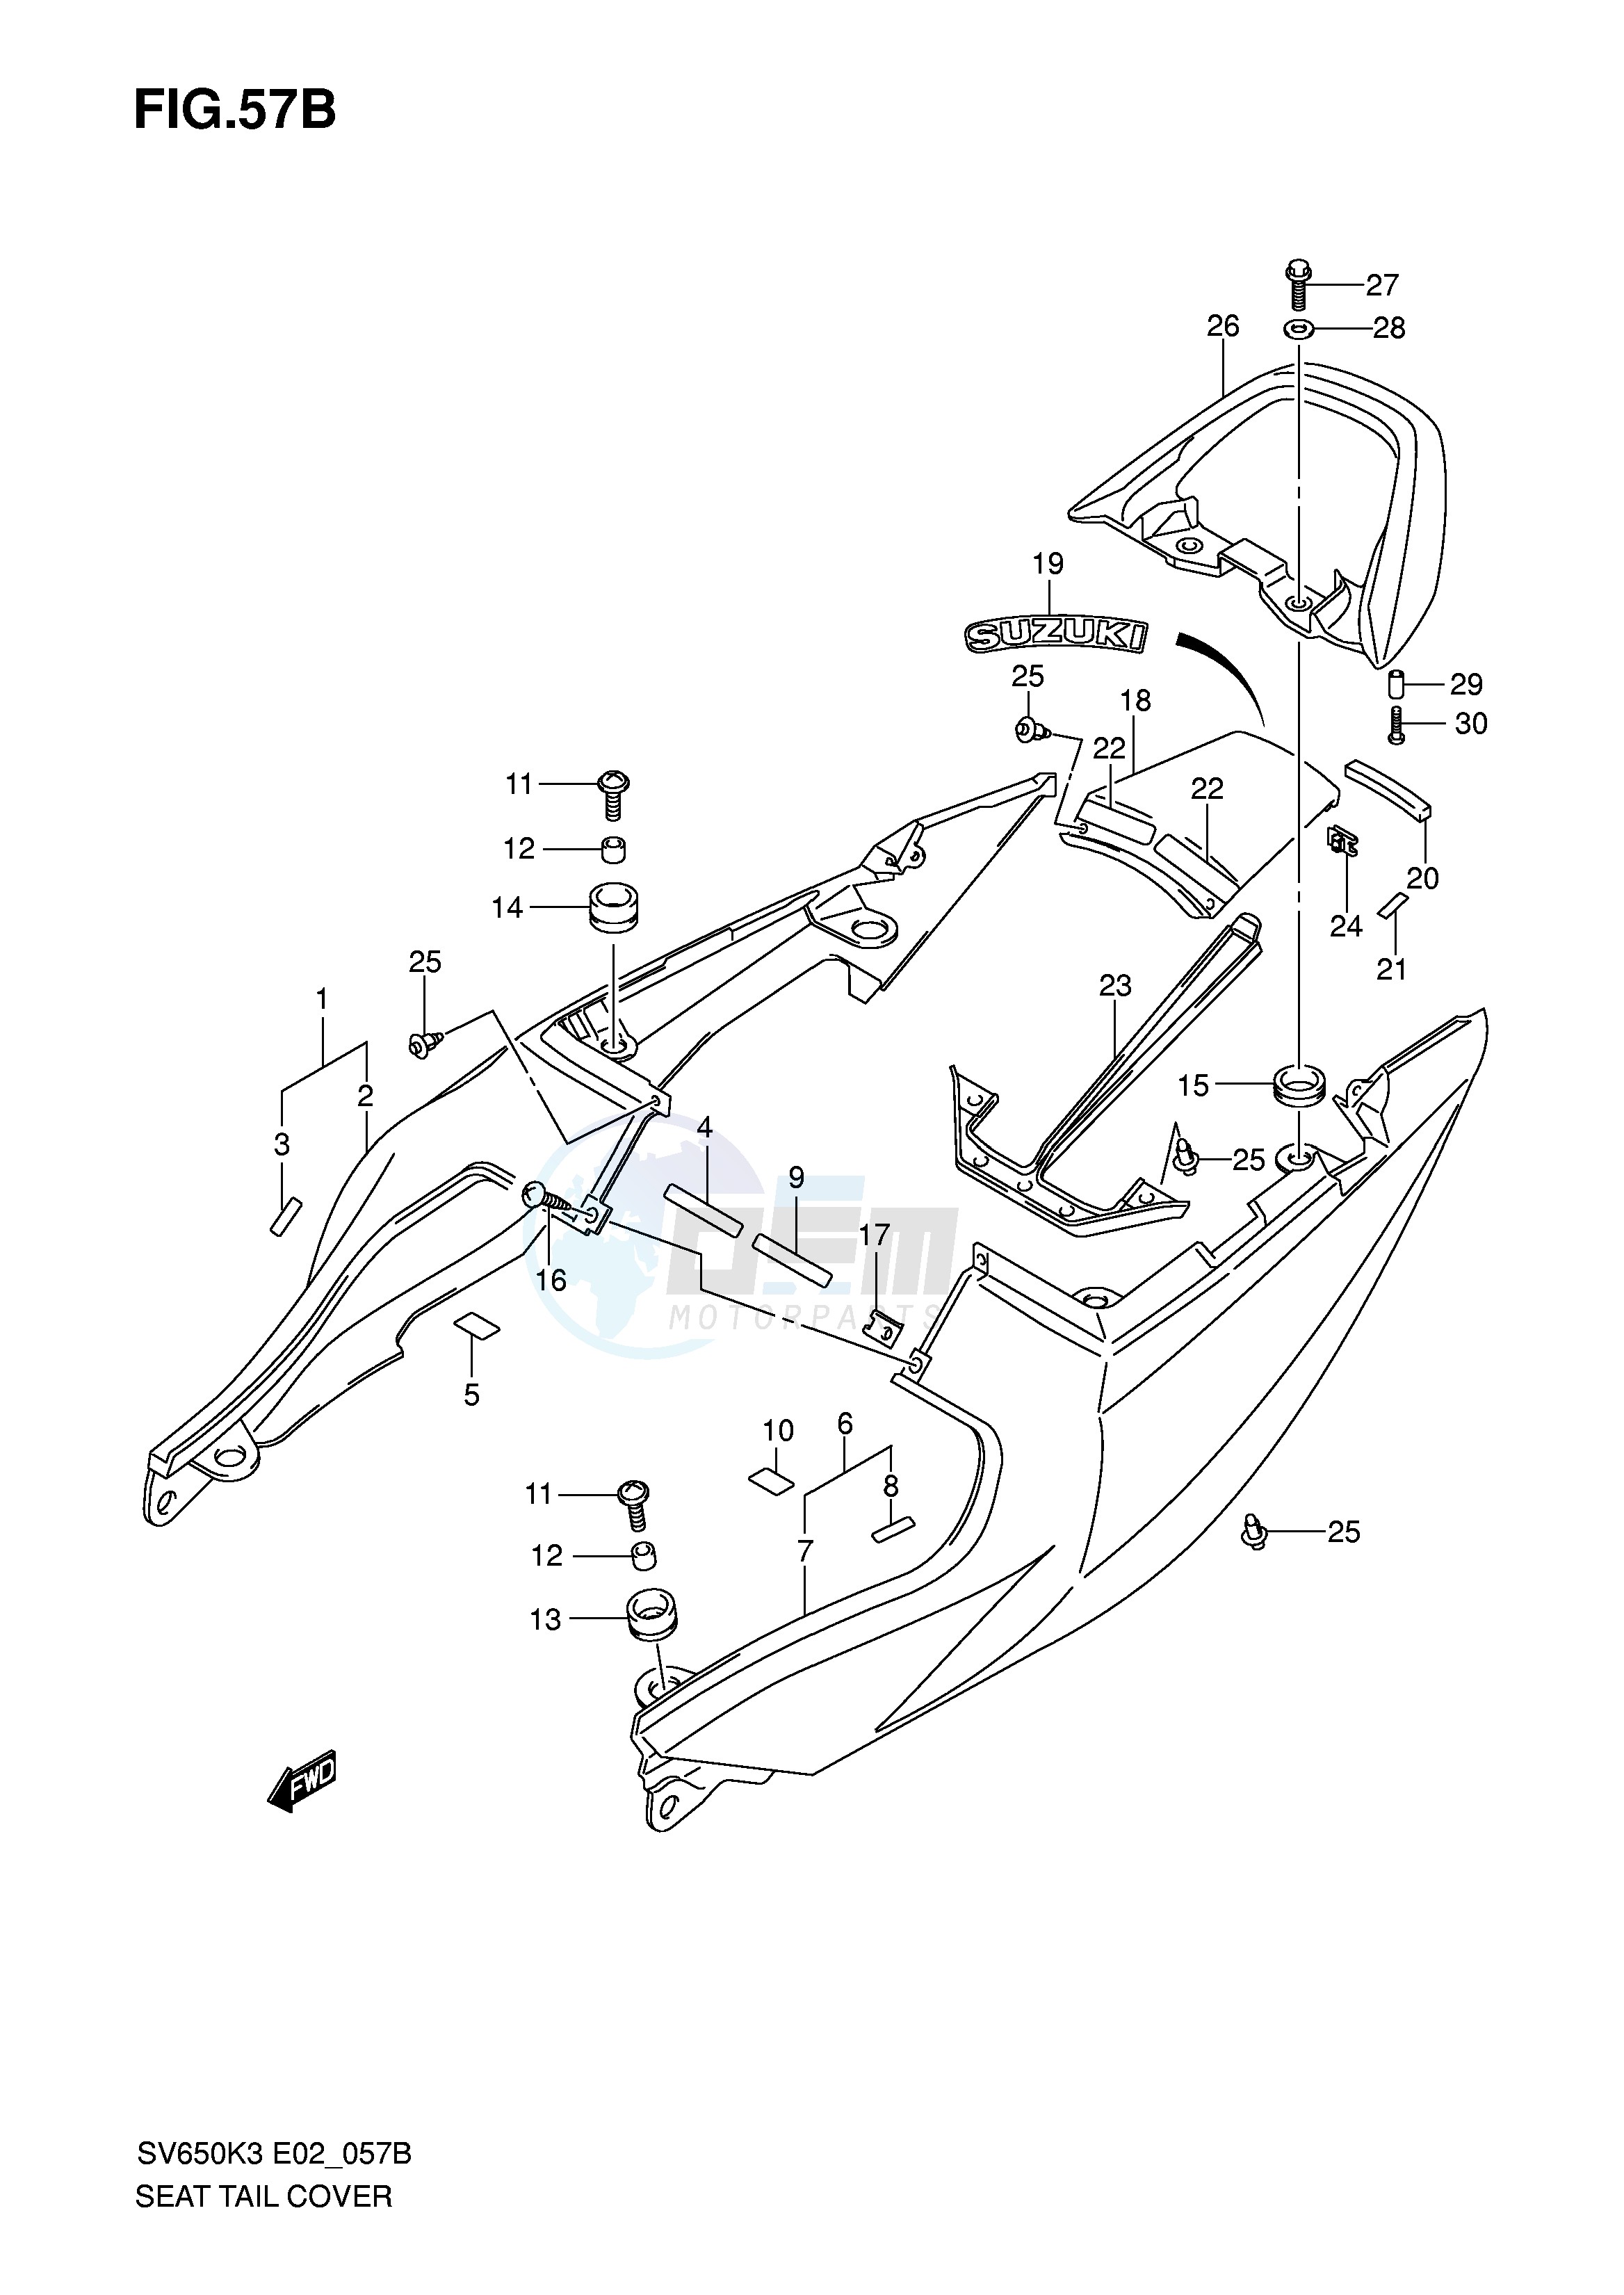 SEAT TAIL COVER (SV650SK4 SUK4) blueprint